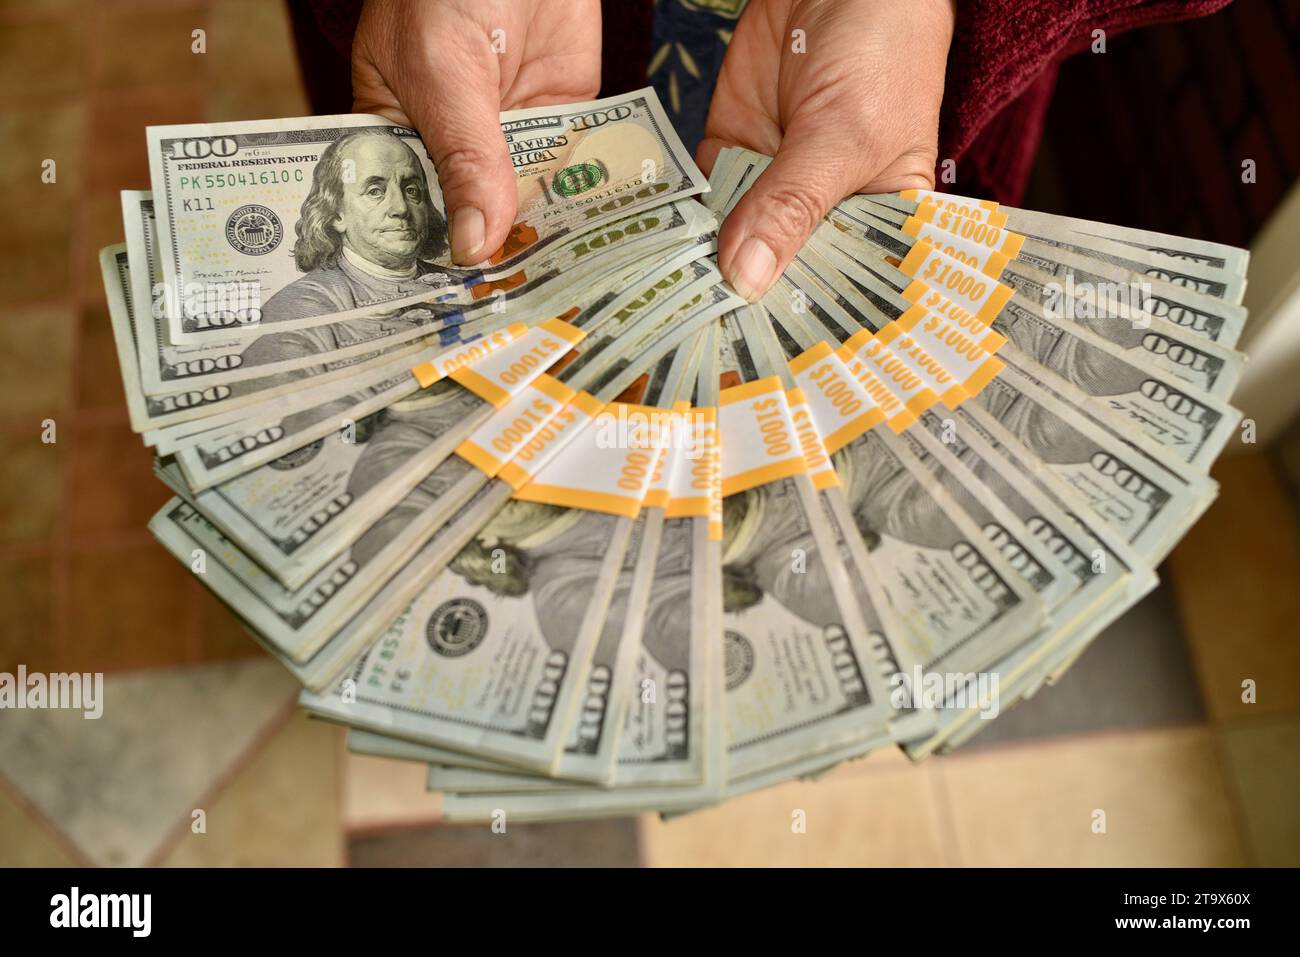 Real $23 000 US dollars, en billets de 100 $ en monnaie comptant, organisé et enveloppé avec des bandes de banque de $1 000, étant attisé dans les mains, Browntown WI, USA Banque D'Images